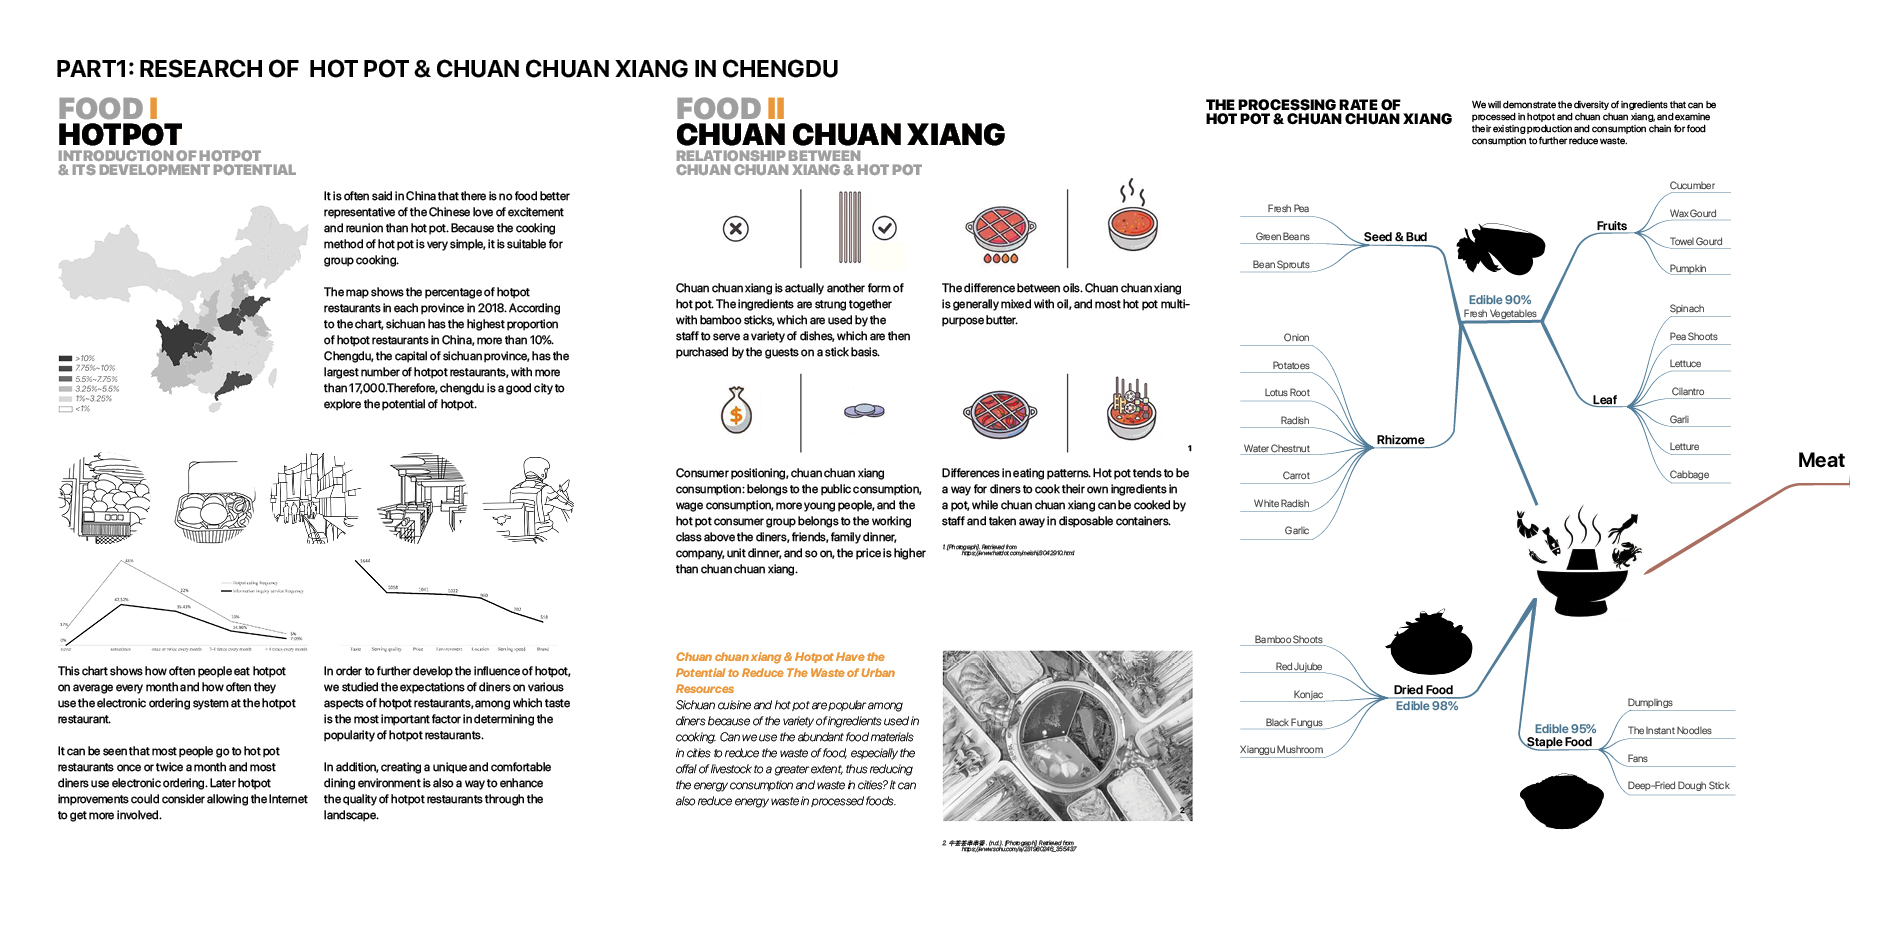 Research of  Hot Pot & Chuan Chuan Xiang in Chengdu (First Part, Chengdu)